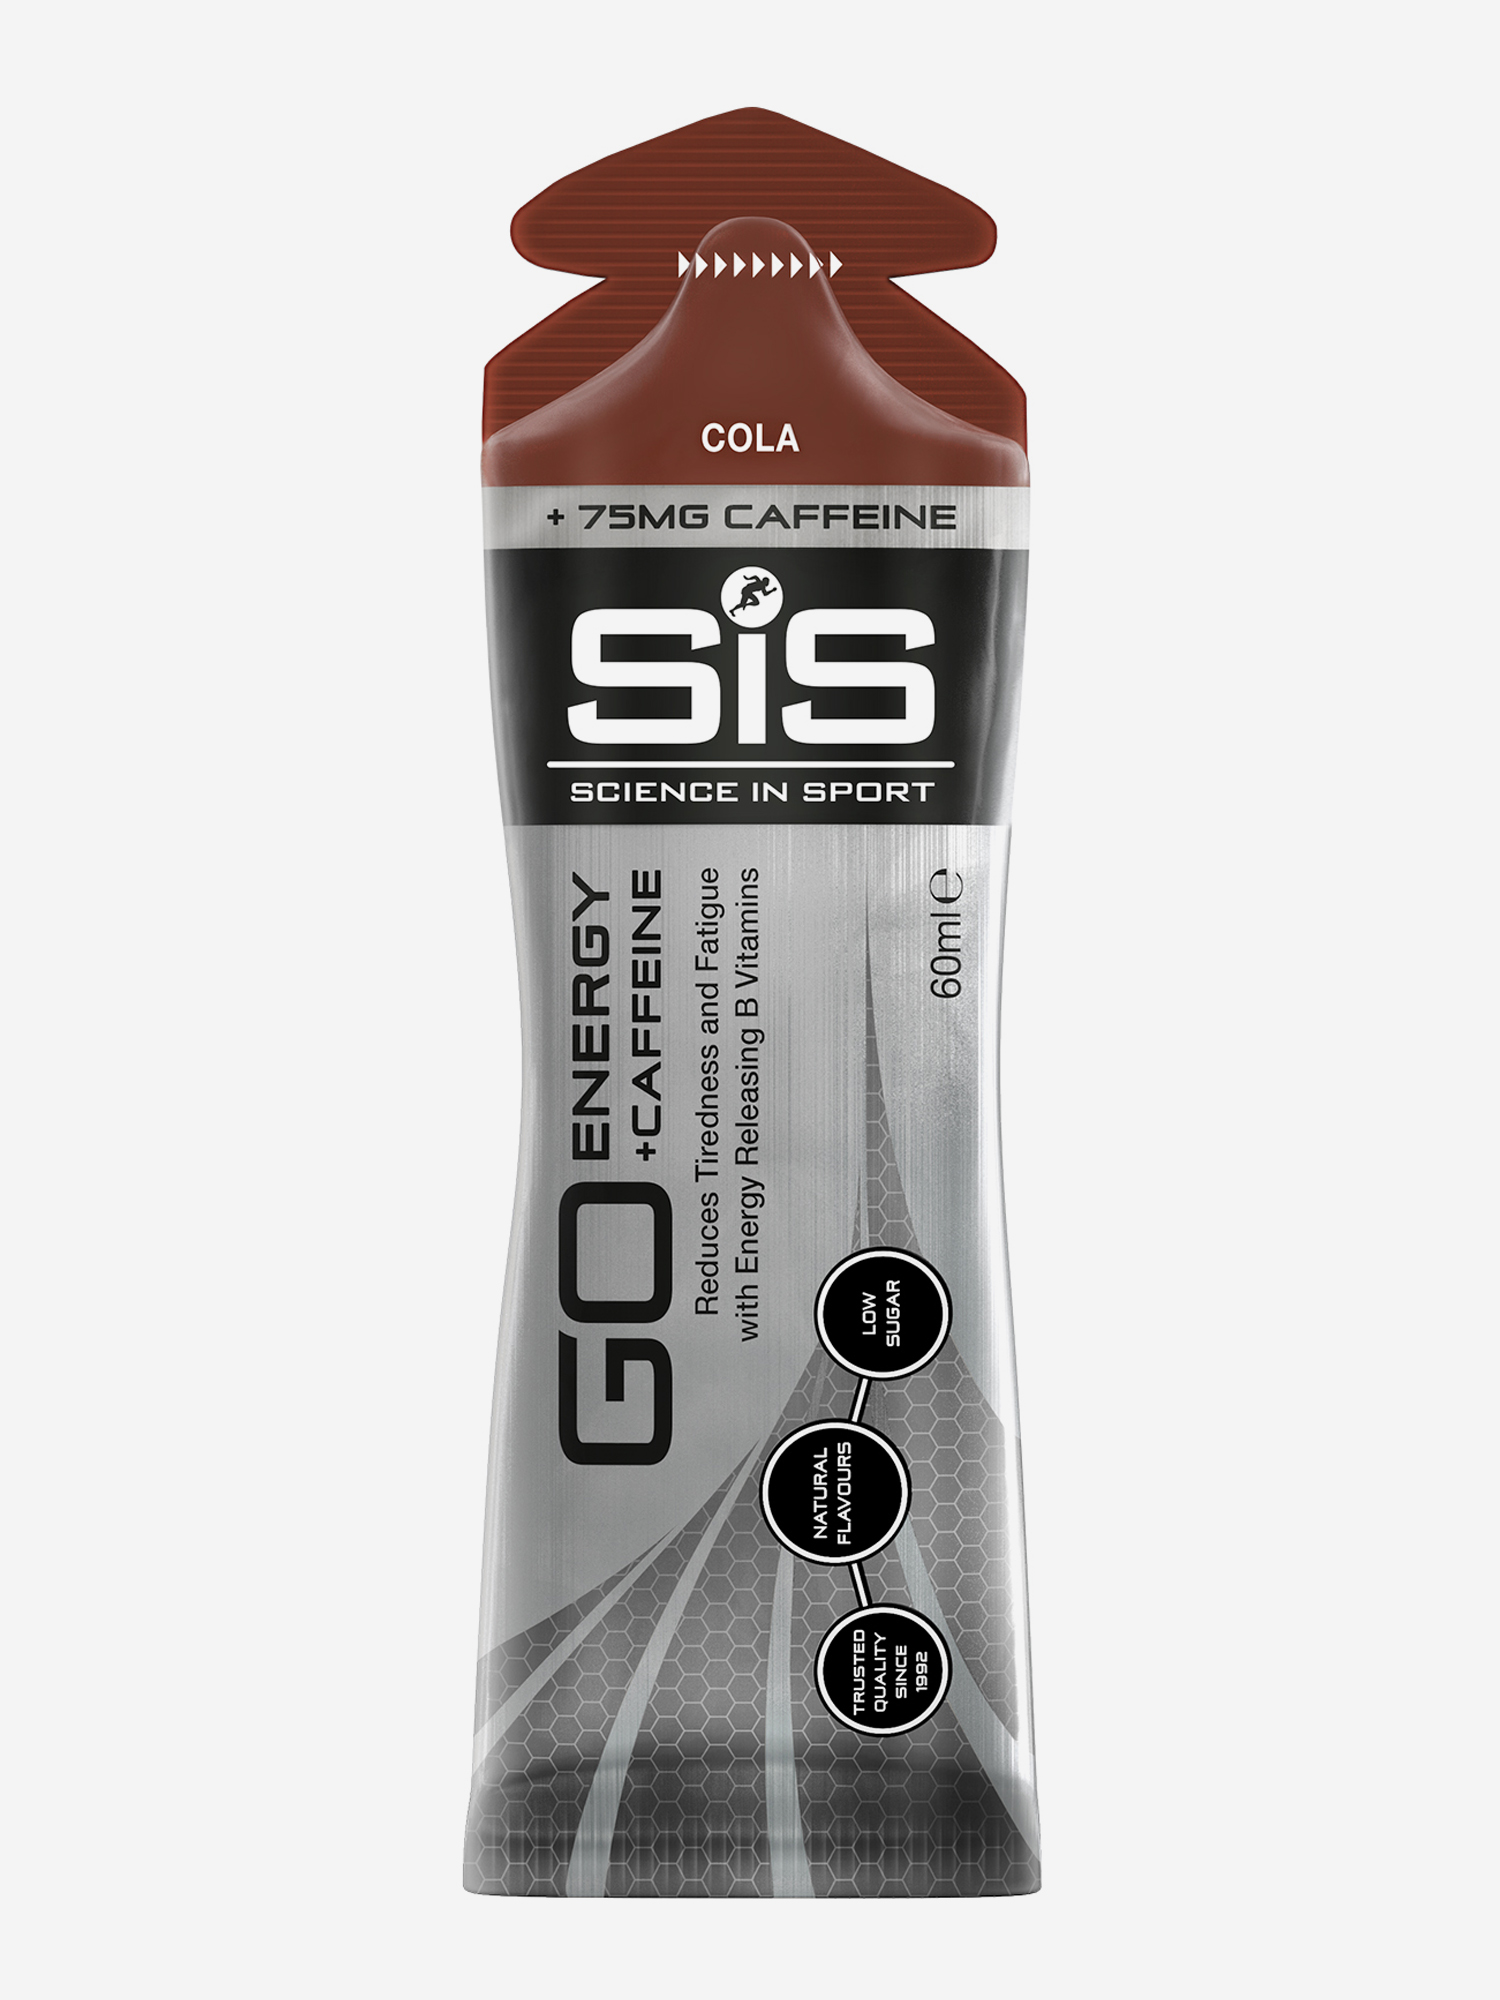 SiS GO ENERGY+CAFFEINE GEL Гель энергетический изотонический 75 мг., вкус Кола